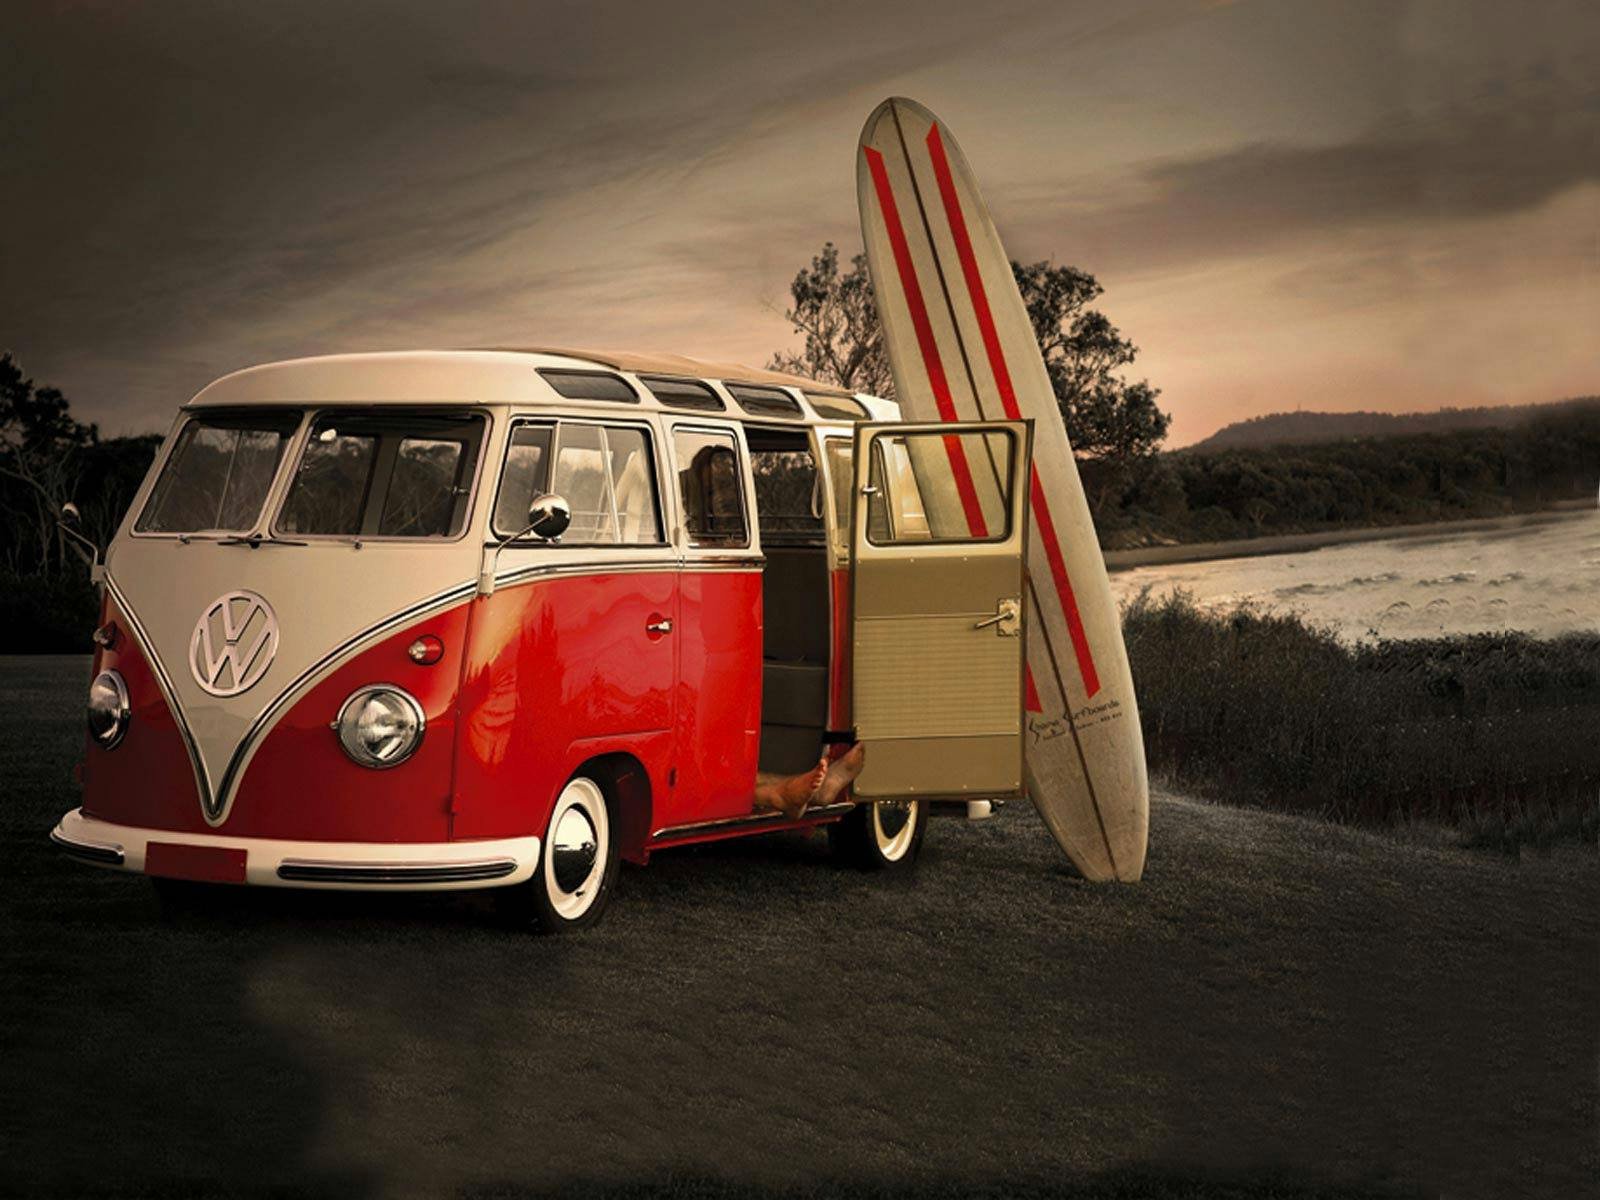 Volkswagen Van Wallpaper and Background Image | 1600x1200 | ID:591128